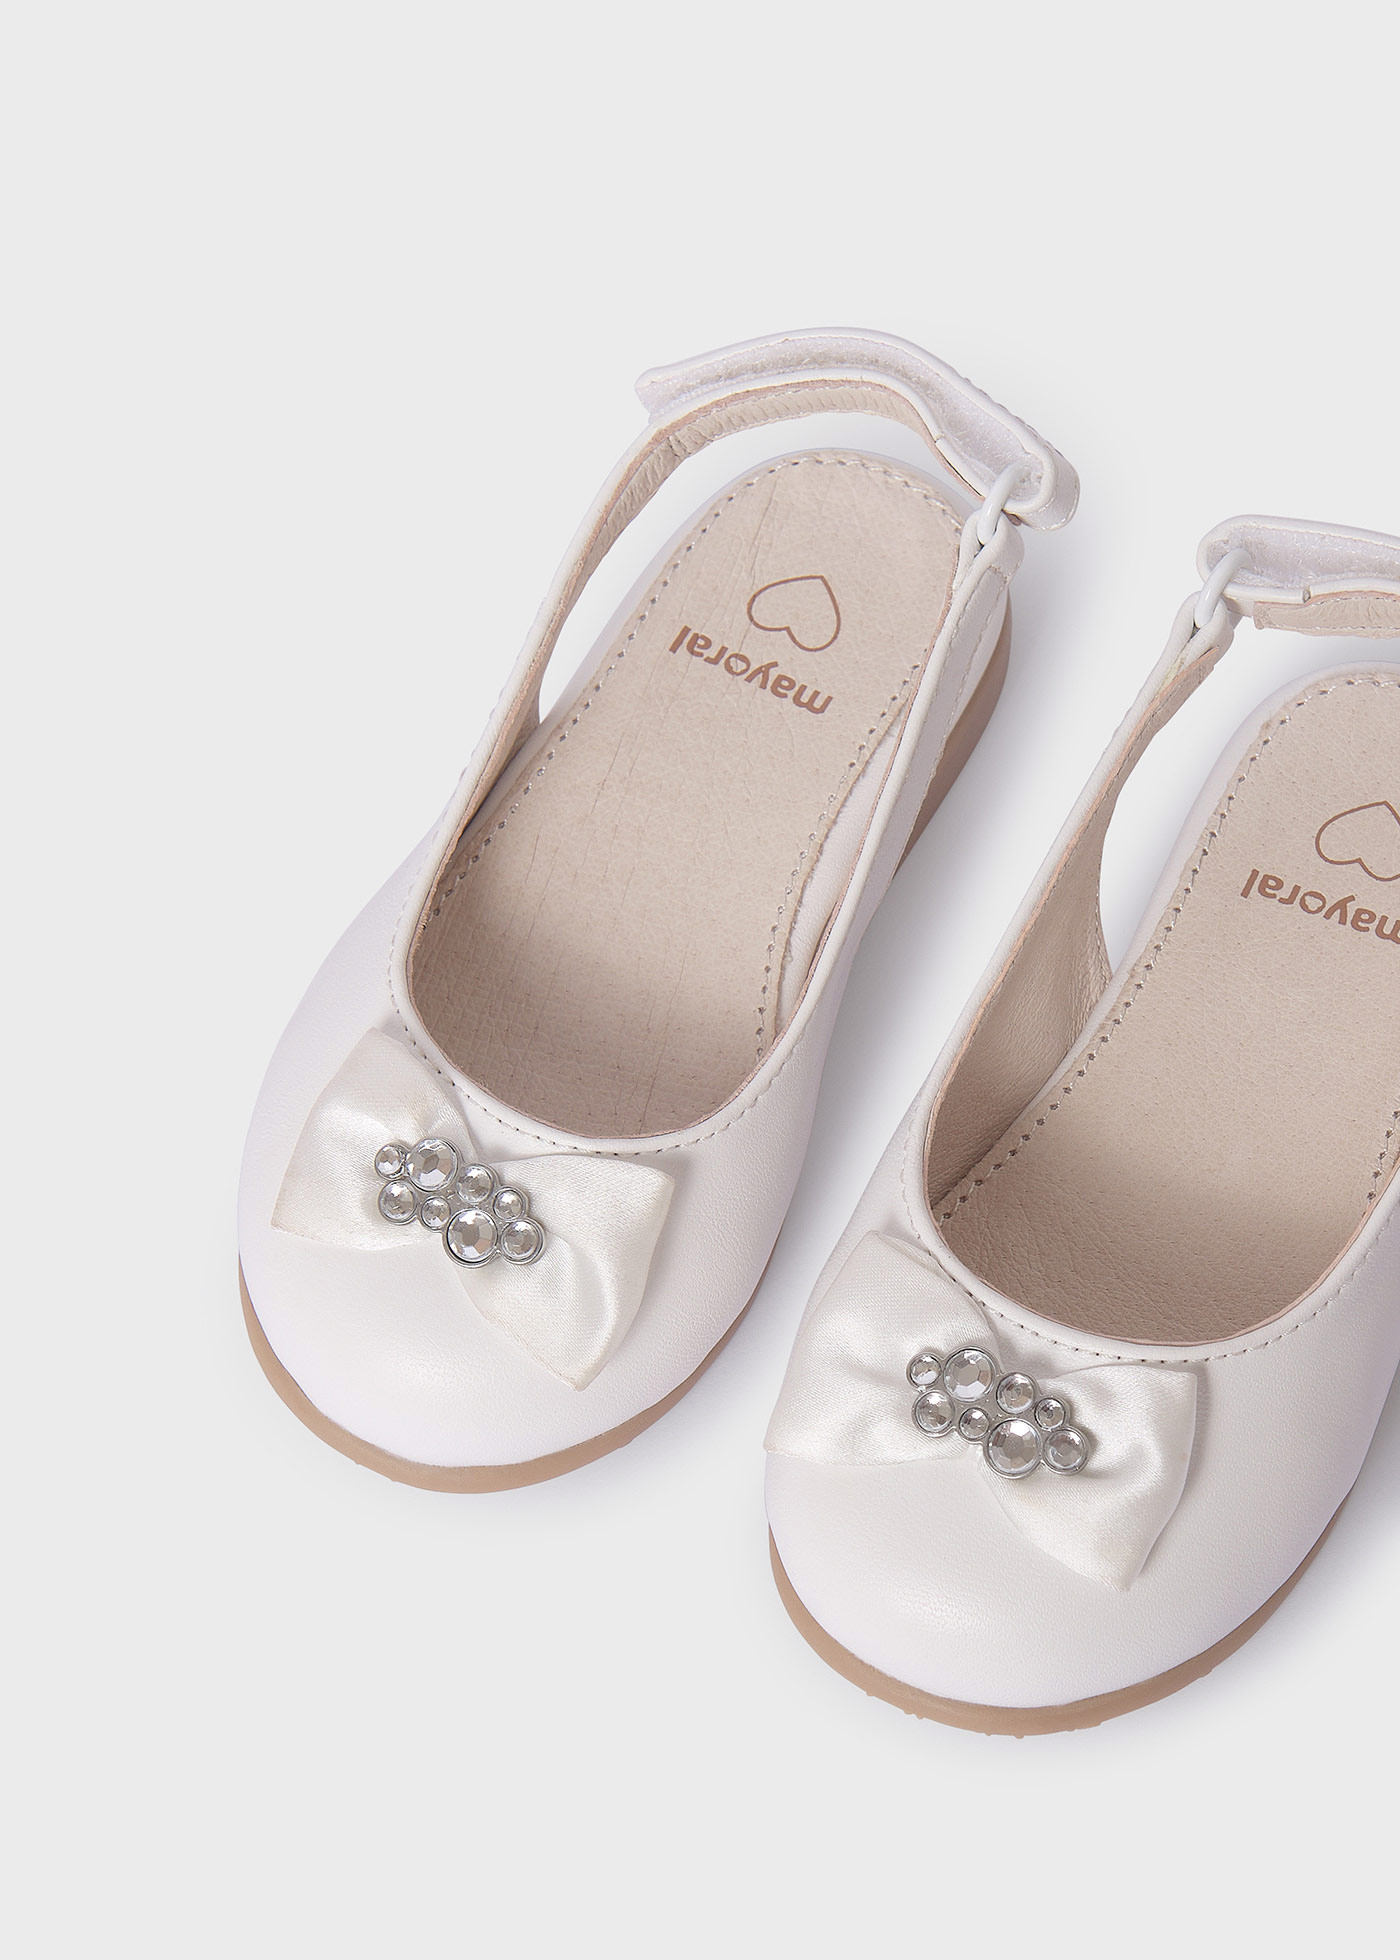 Baby Ballerina Flats Sustainable Leather